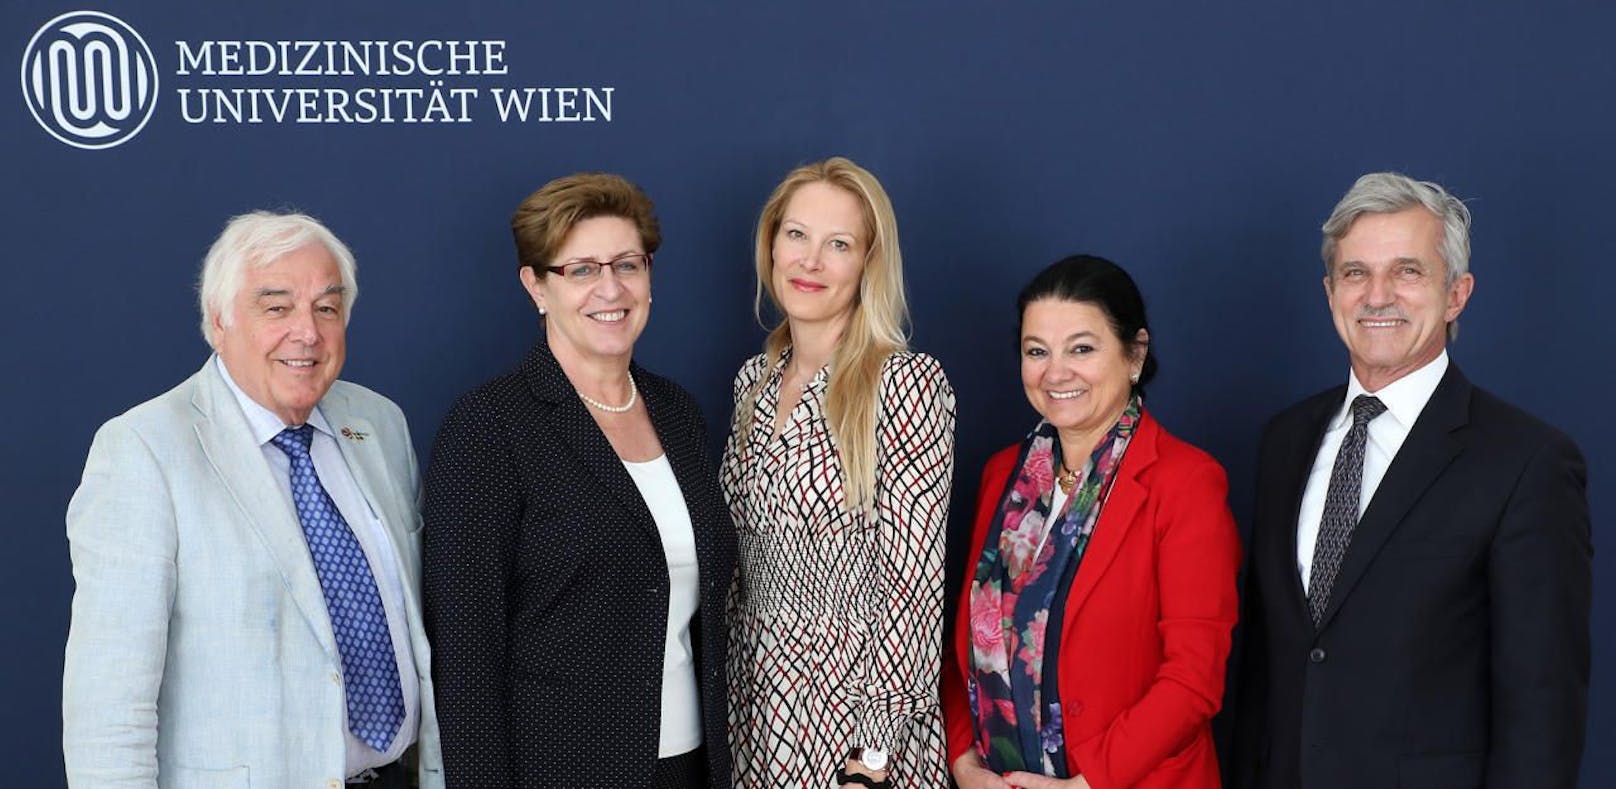 Der neue Universitätsrat der MedUni Wien hat Eva Dichand (M.) zur Vorsitzenden gewählt.